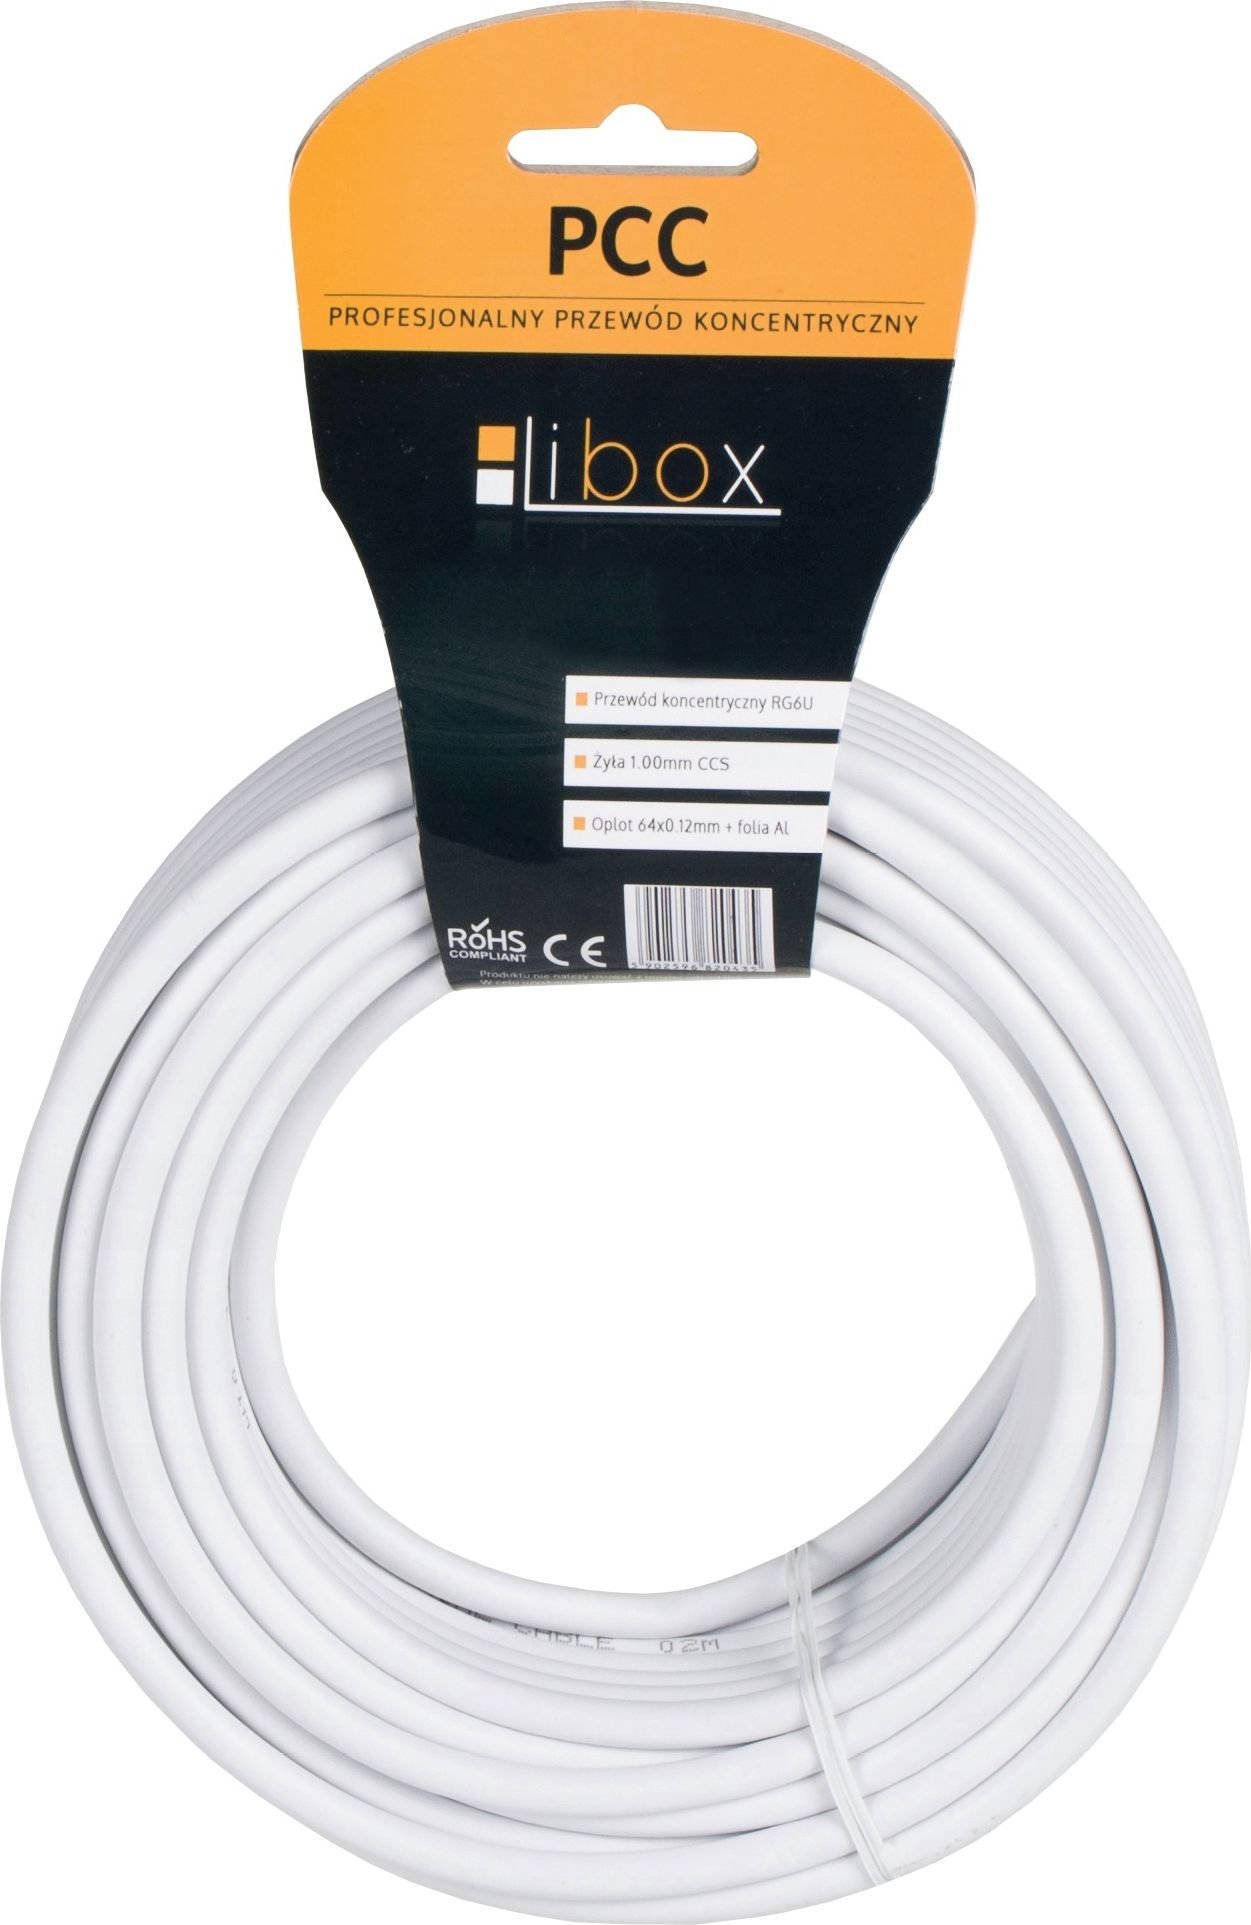 Cablu Libox SAT Trishield HD/10m PCC102-10 LIBOX